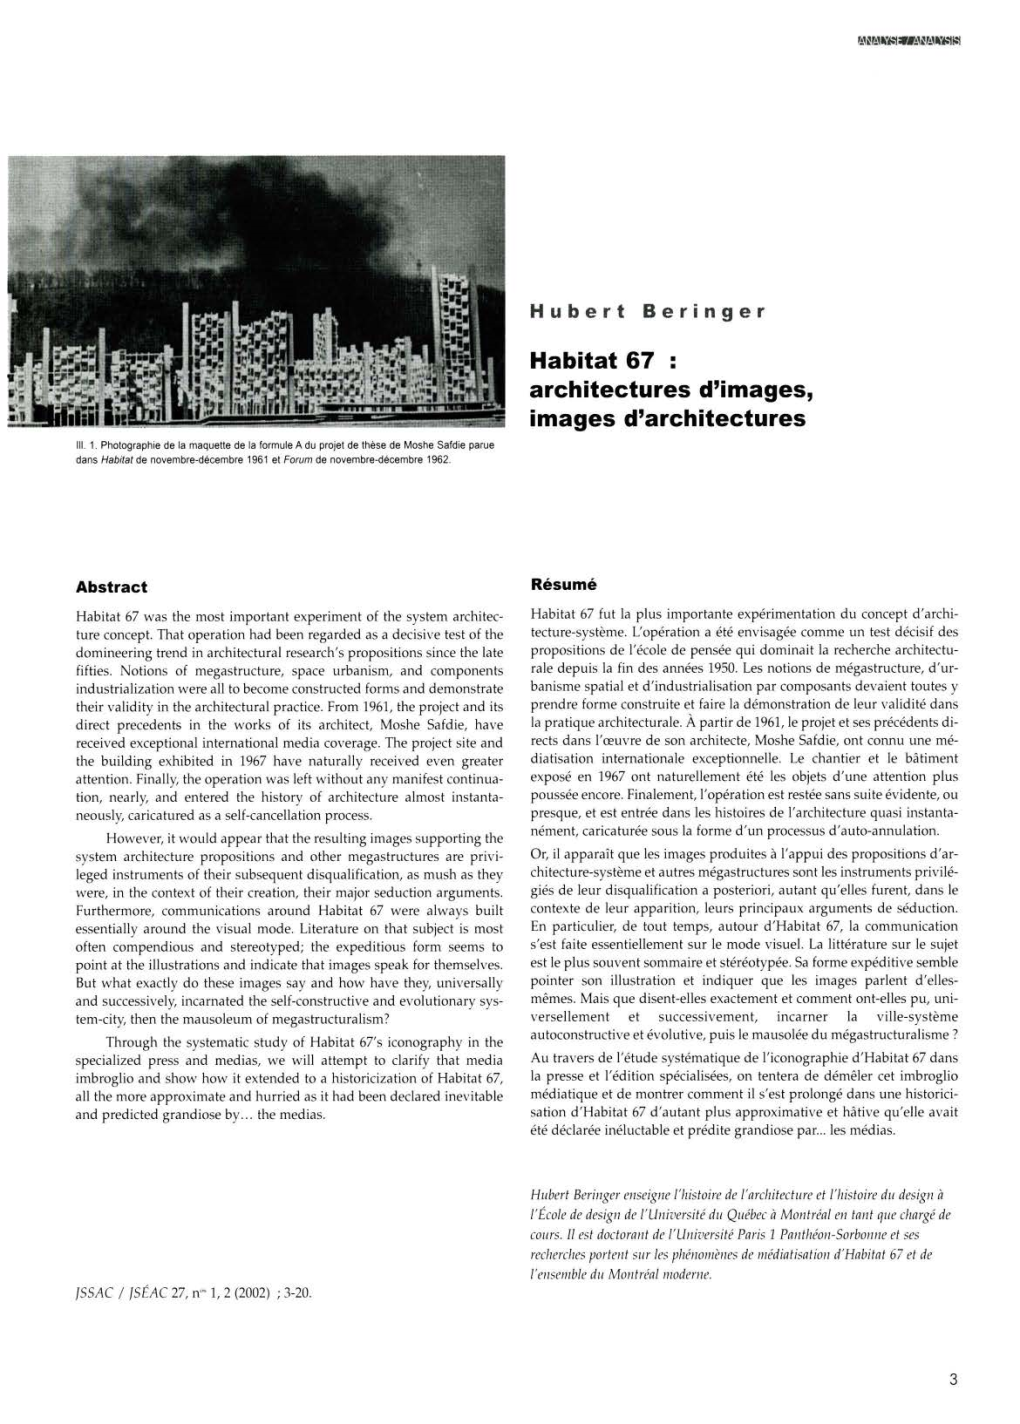 Habitat 67 Architectures D'images, Images D'architectures Ill